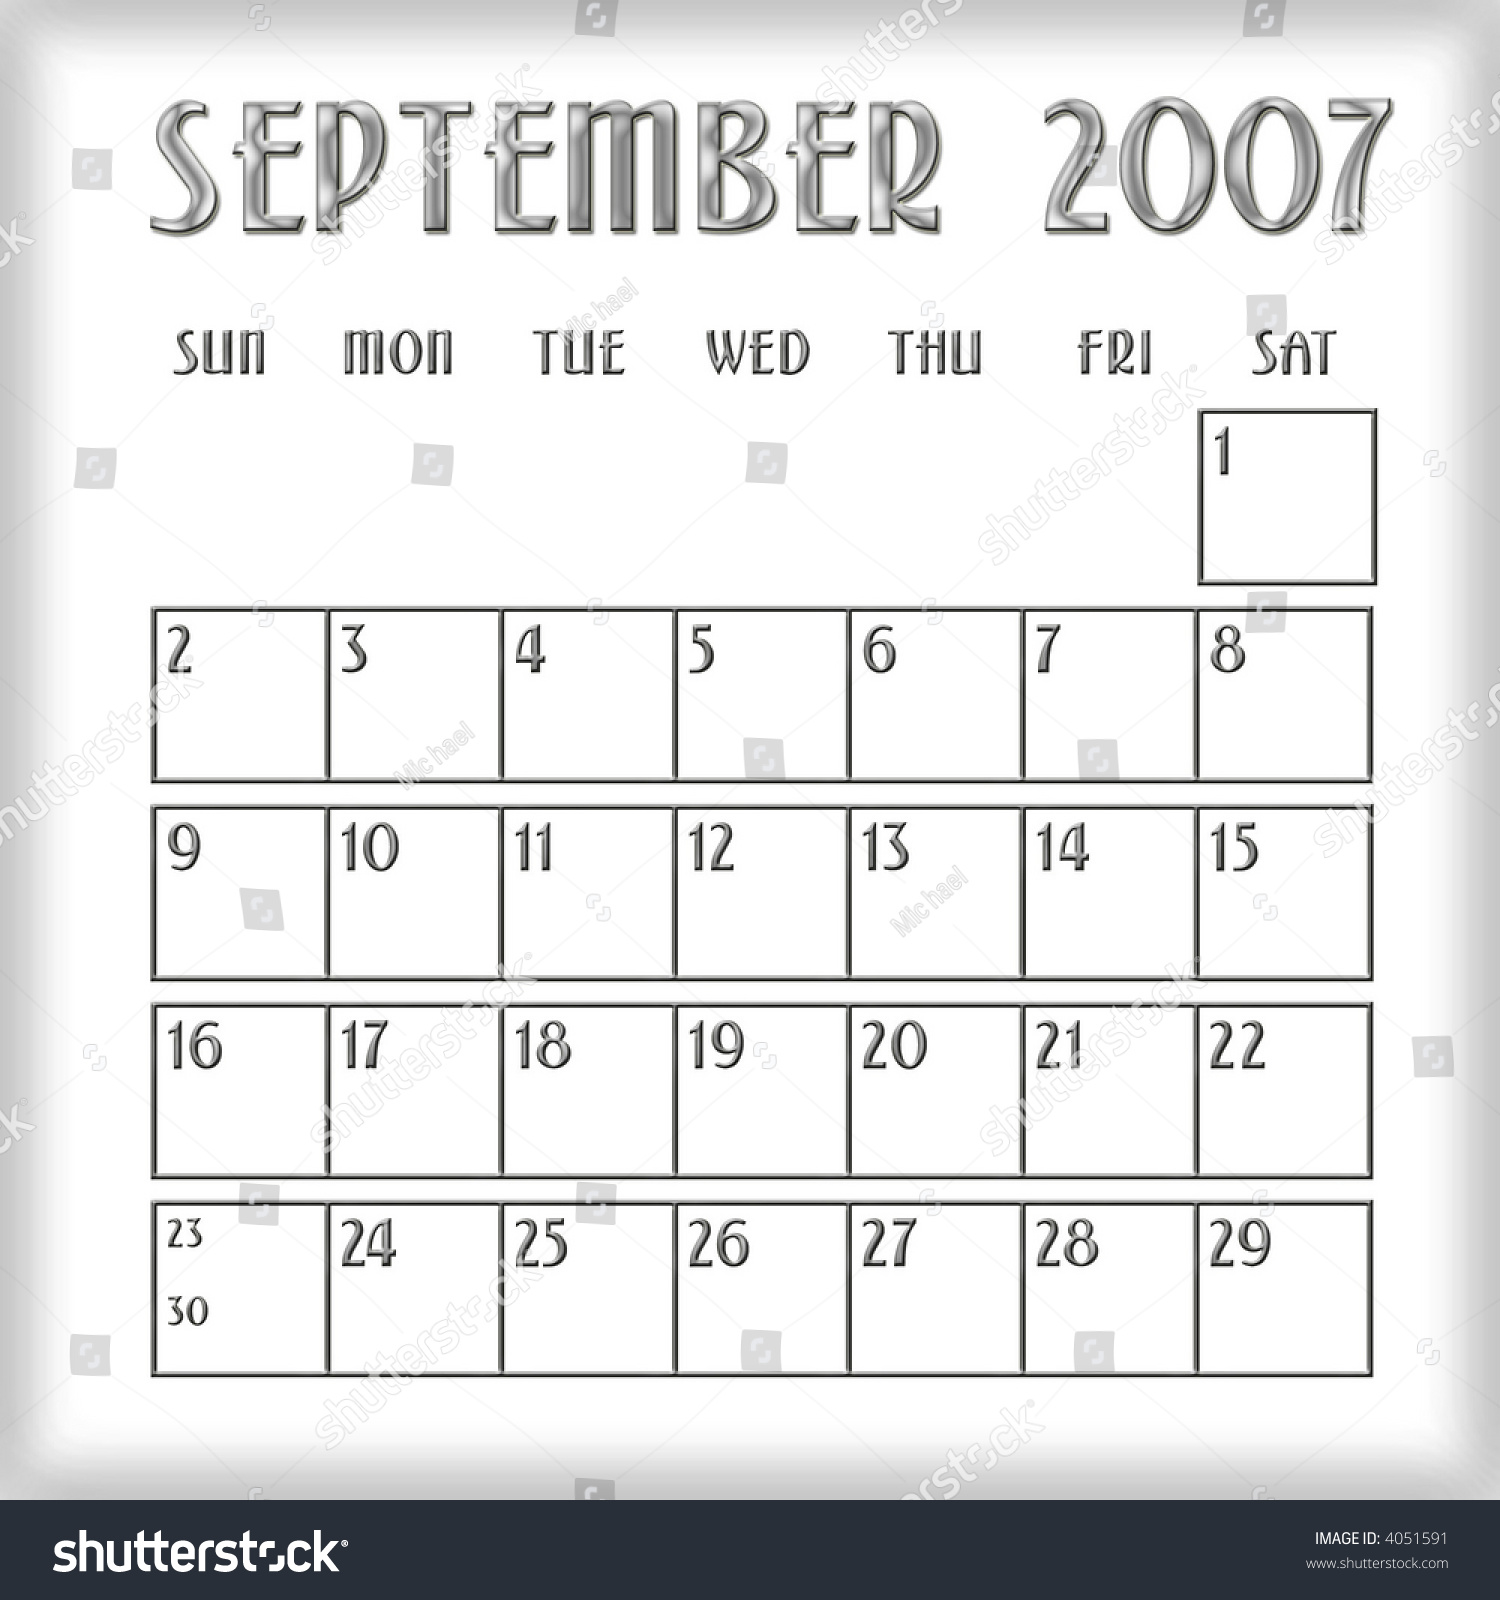 3d September 2007 Agenda Calendar Stock Photo 4051591 Shutterstock